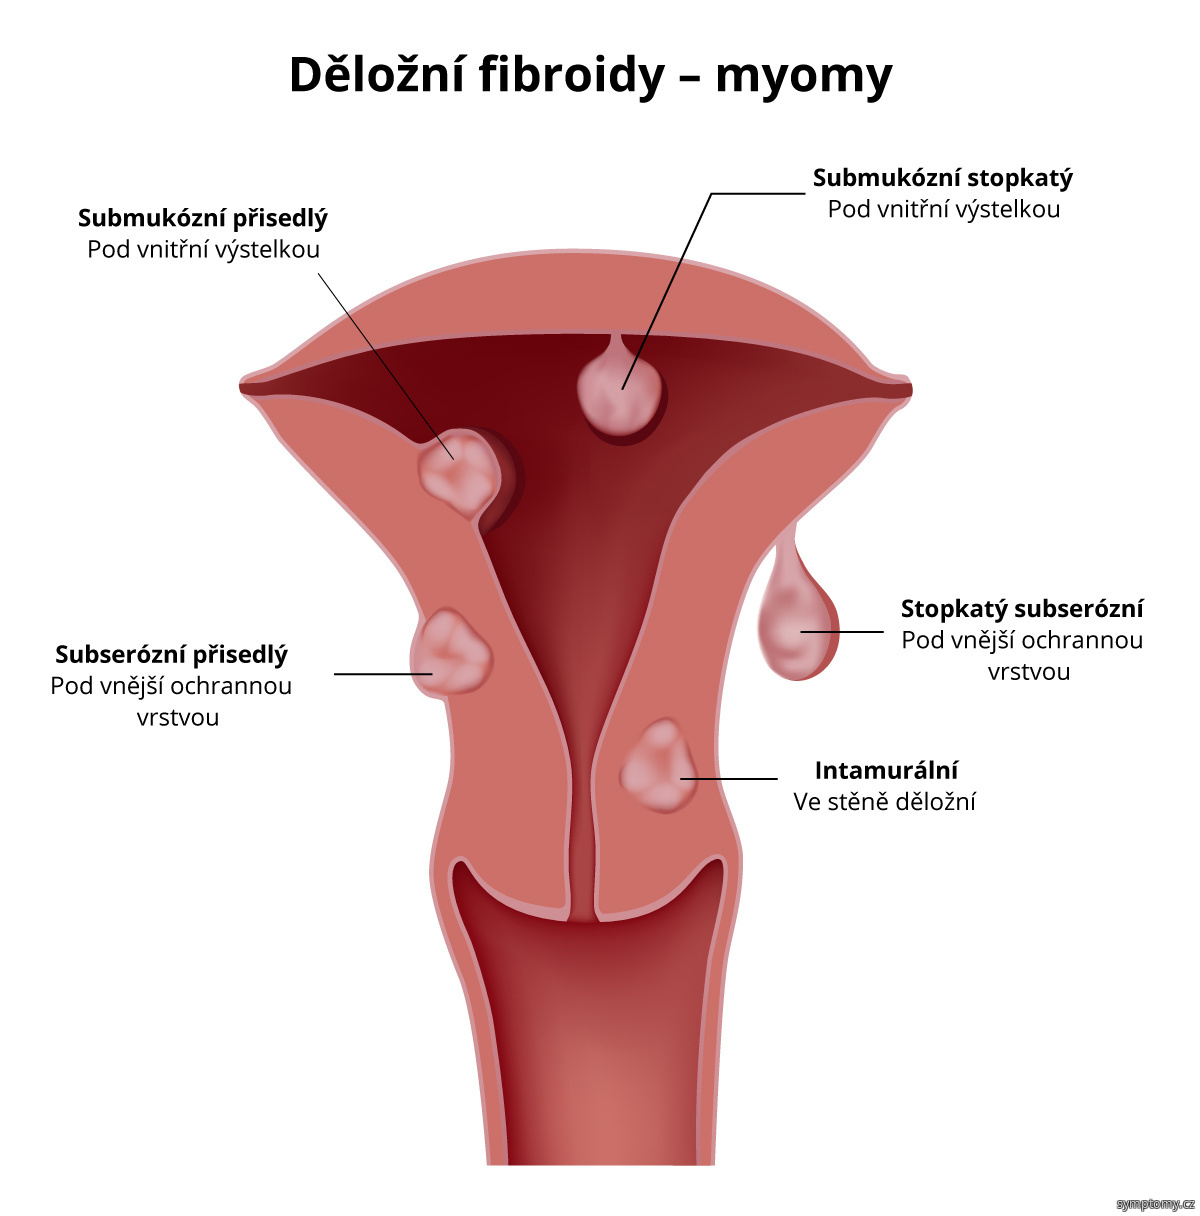 Děložní fibroidy---myomy